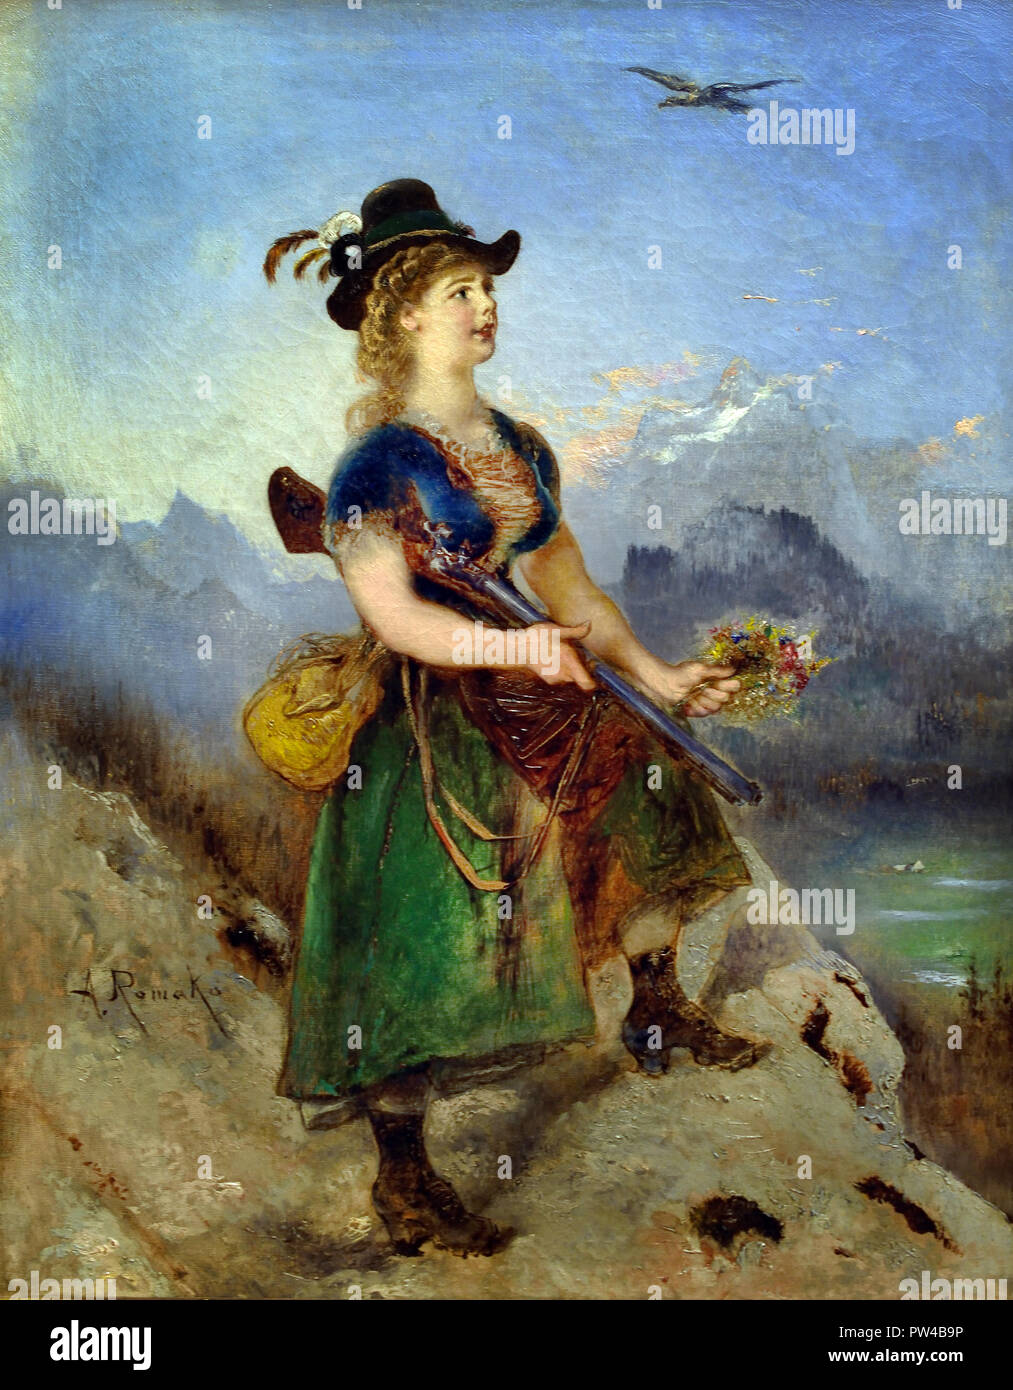 Geierwally 1880 par Anton Romako 1832 - 1889 peintre autrichien. L'Autriche . ( Anton Romako a été l'un des grands pionniers du modernisme ) Banque D'Images